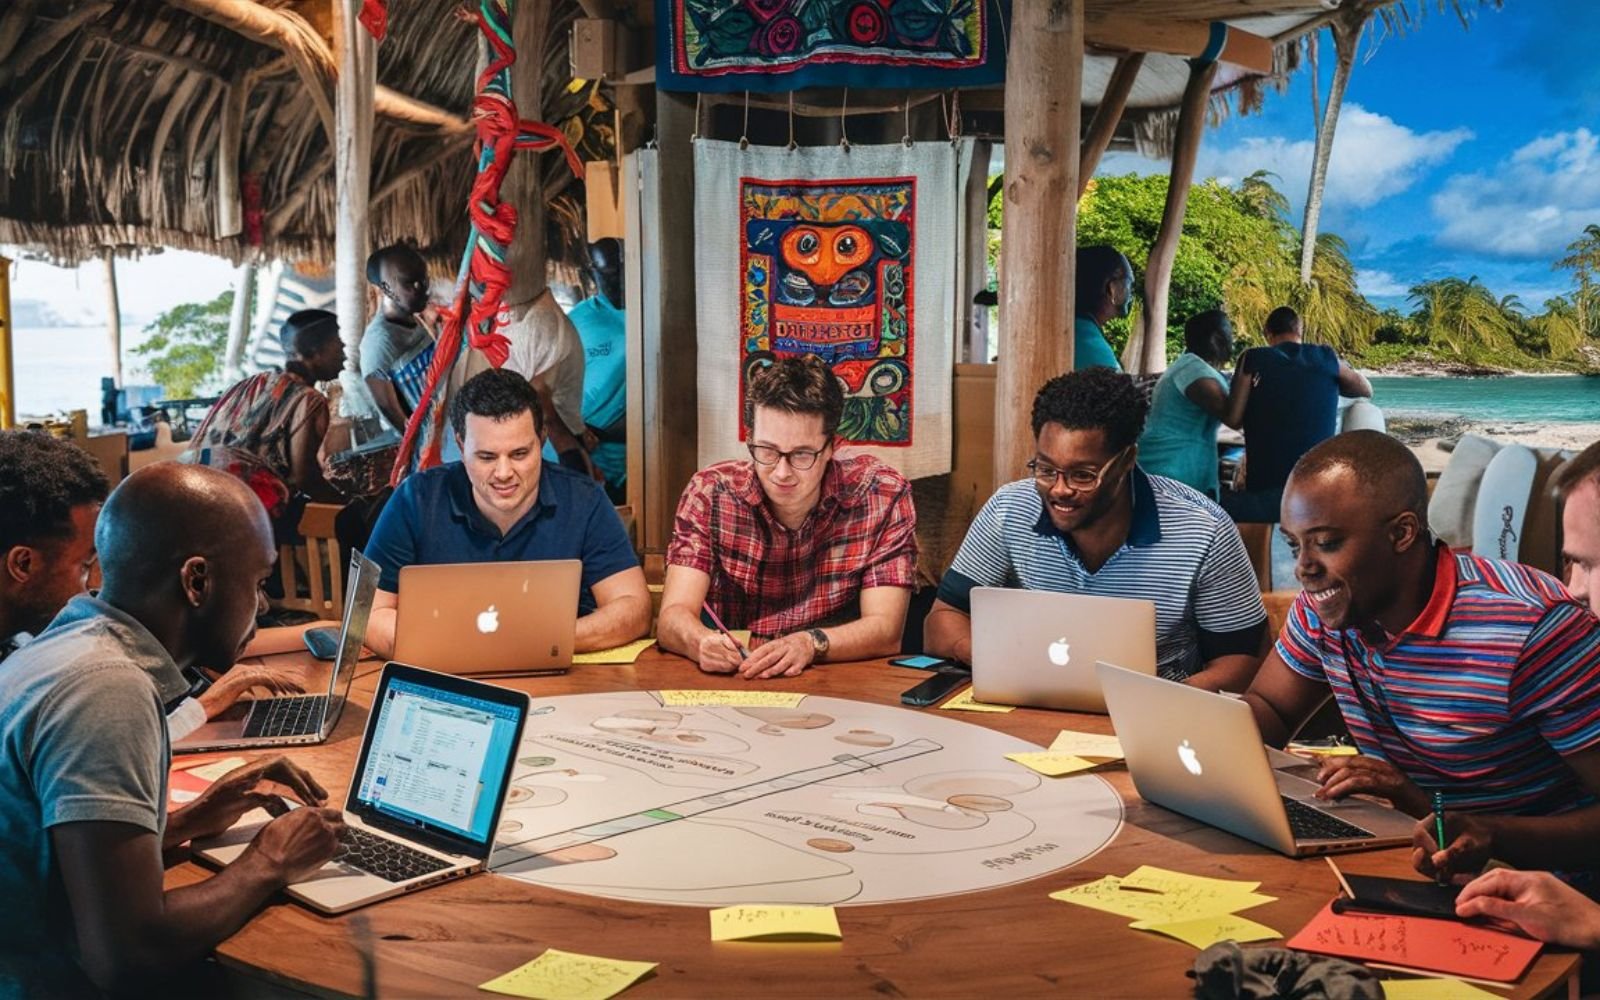 Équipe de développeurs web locaux travaillant ensemble dans un bureau en Guadeloupe, avec des éléments culturels guadeloupéens en arrière-plan